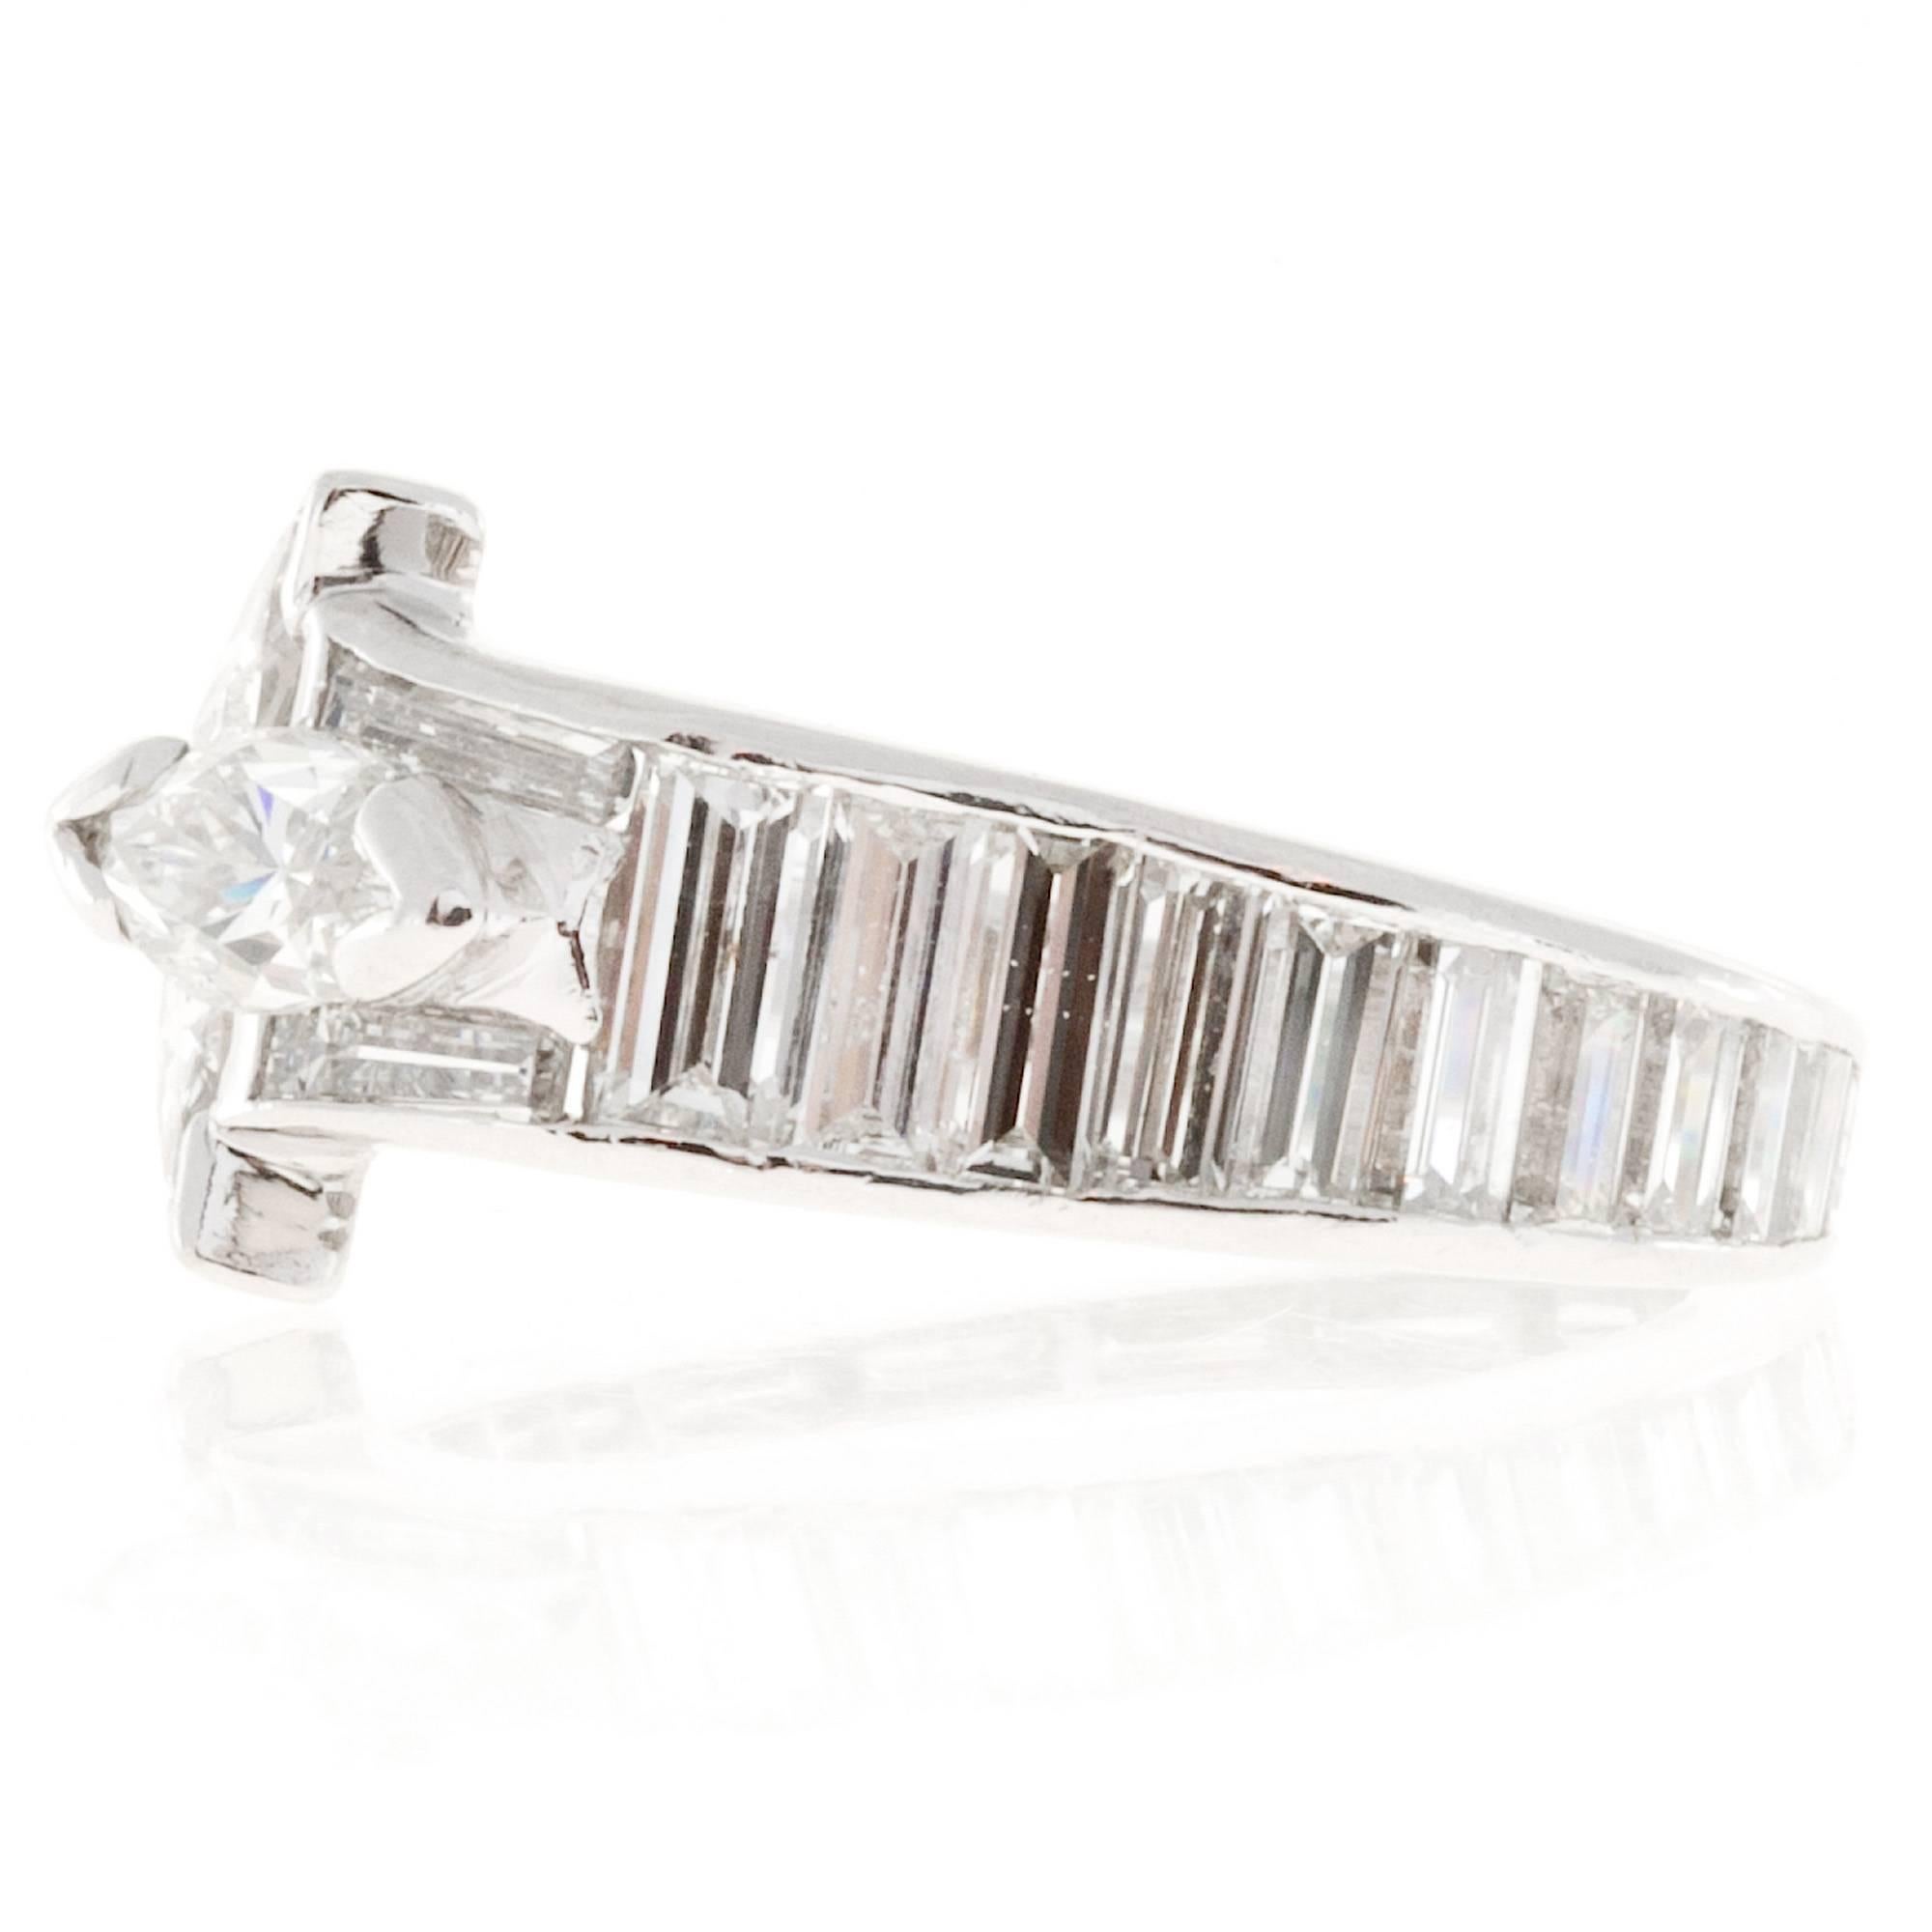 Marquise Cut 1.35 Carat Marquise Baguette Diamond Platinum Ring